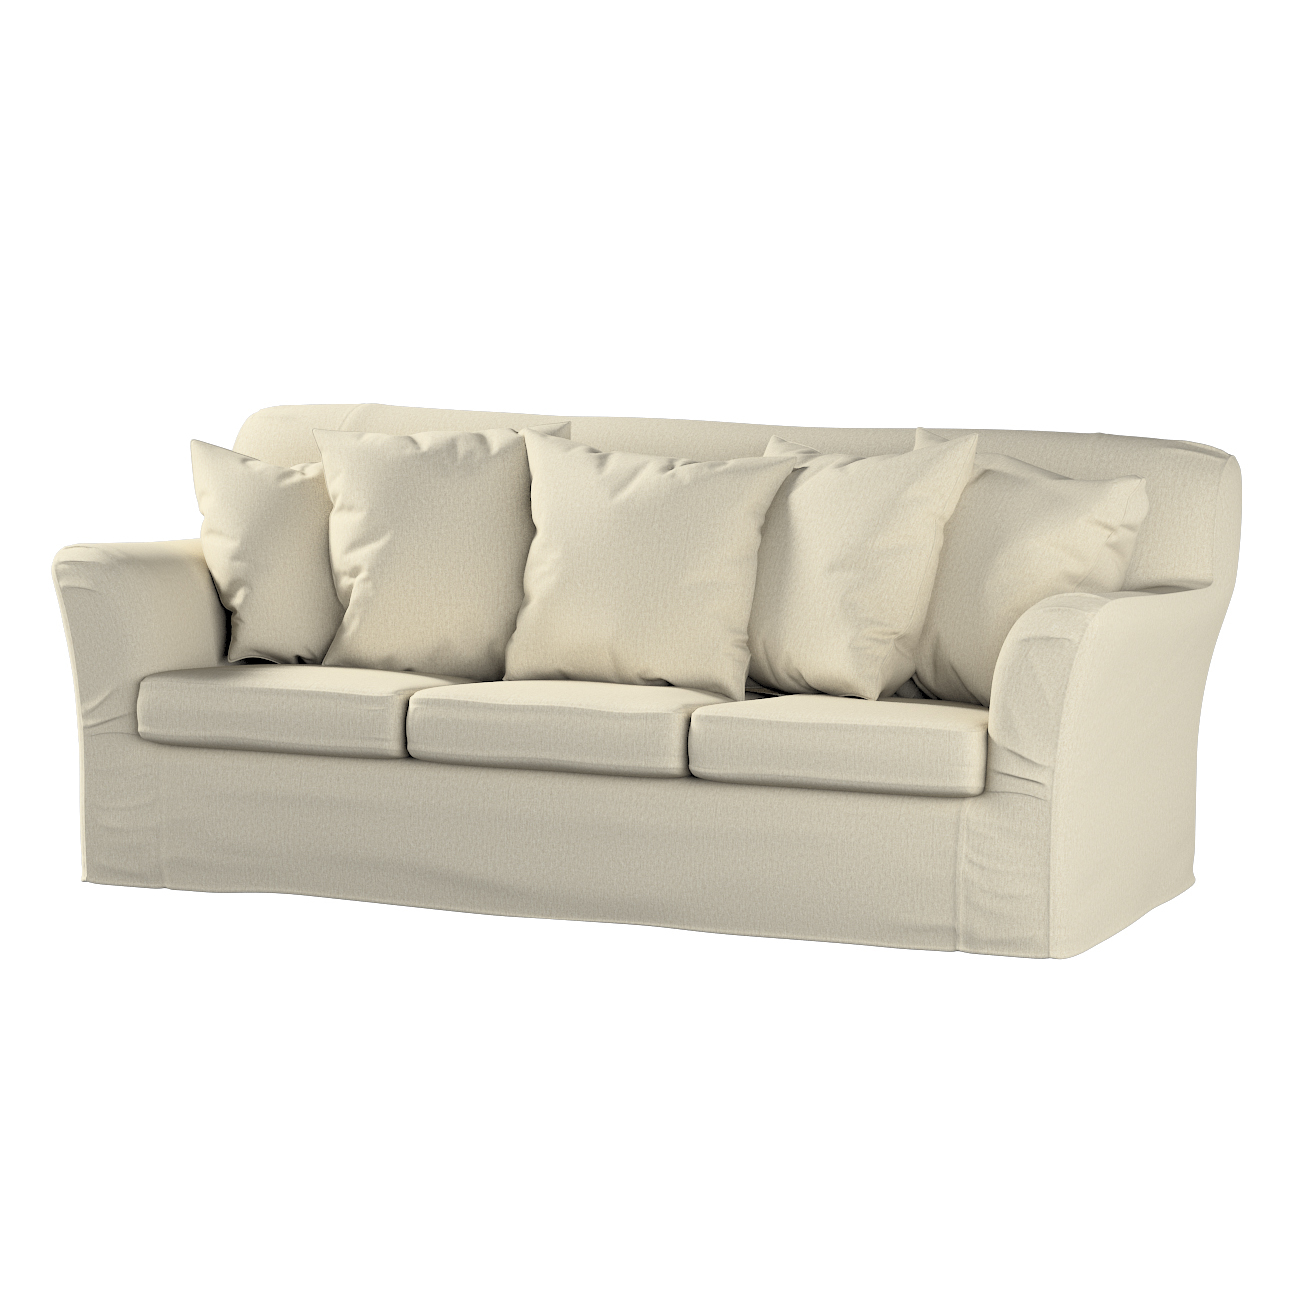 Bezug für Tomelilla 3-Sitzer Sofa nicht ausklappbar, beige-grau, Sofahusse, günstig online kaufen